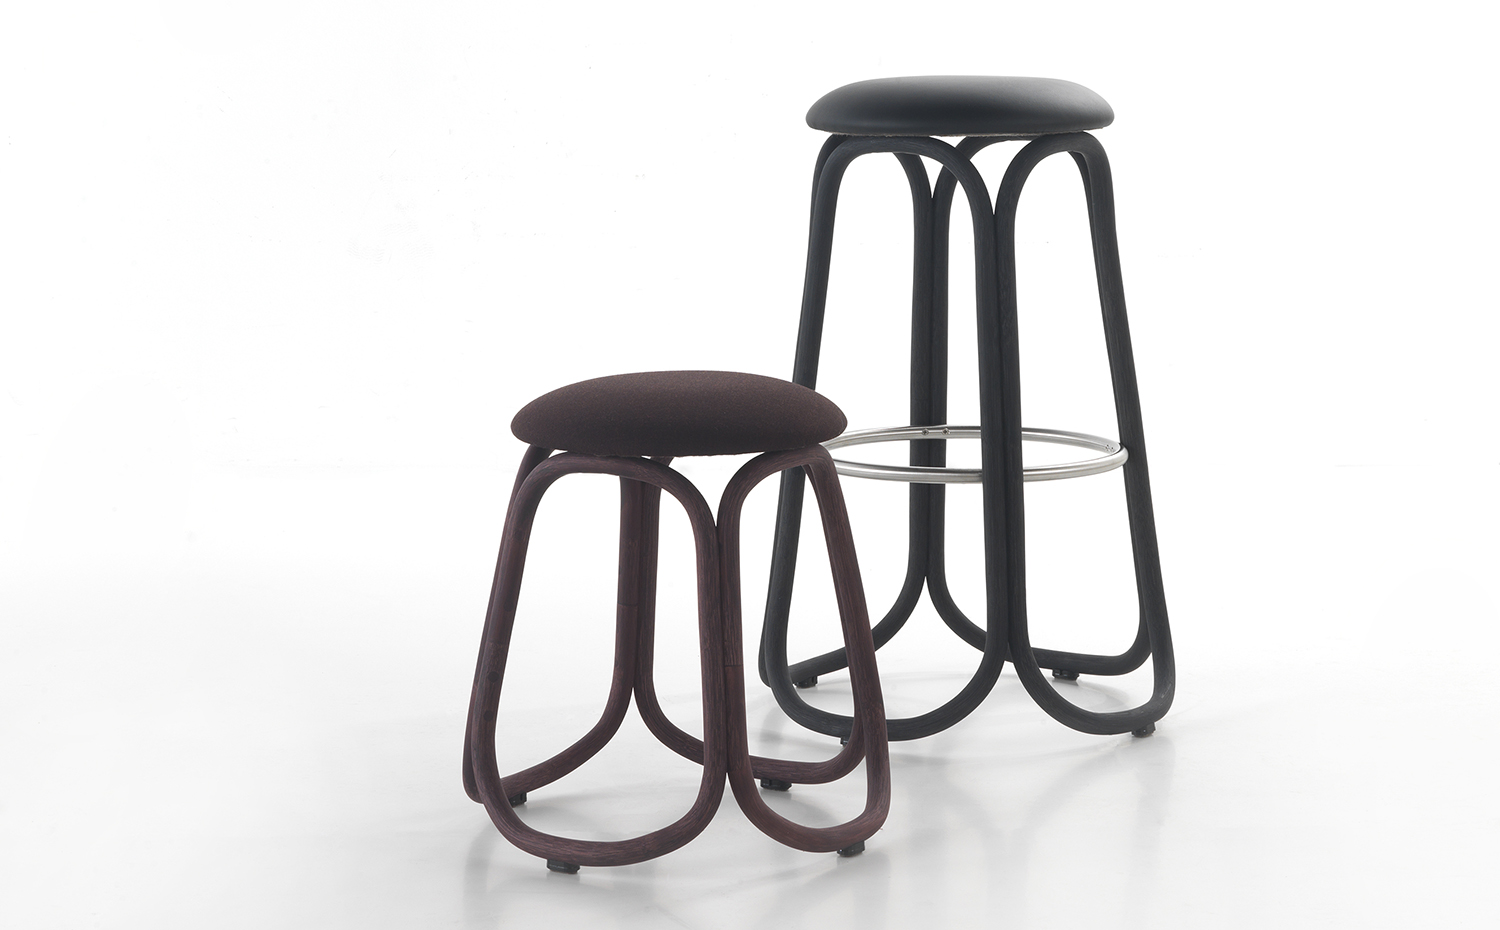 Expormim. Gres stools by Miguel Milá 01. La reedición de los taburetes Gres se presenta en dos versiones